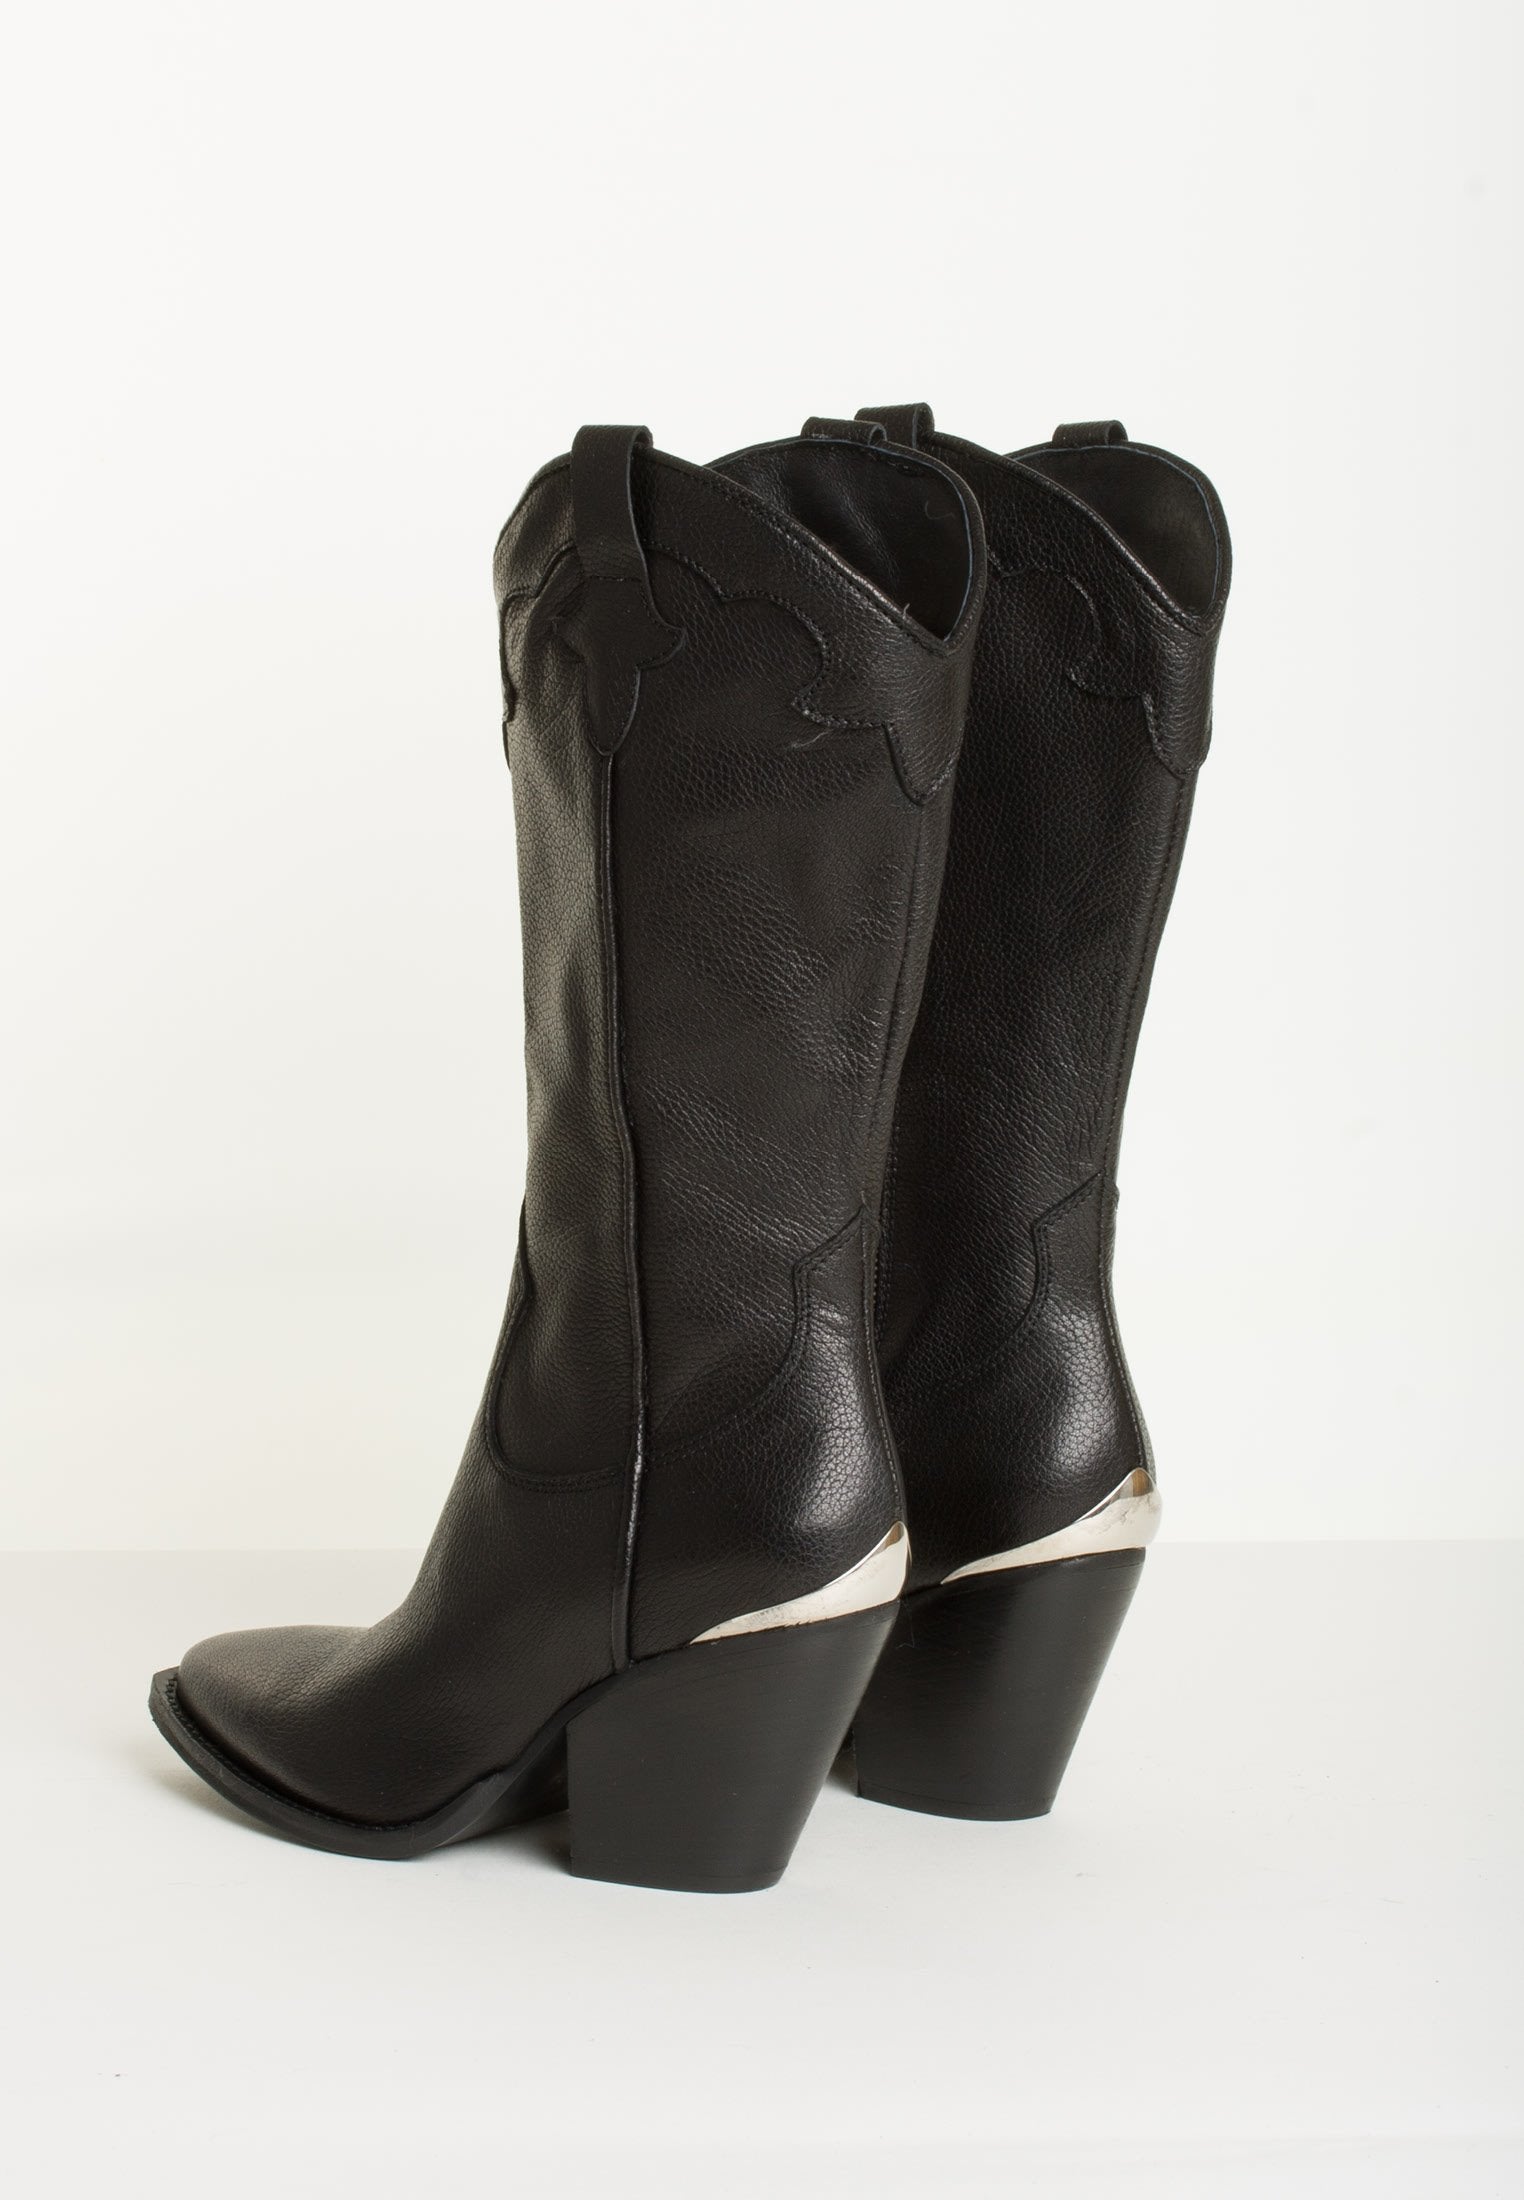 Brooke Buffalo Black Boots BROOKE-BLACK-1 - 4